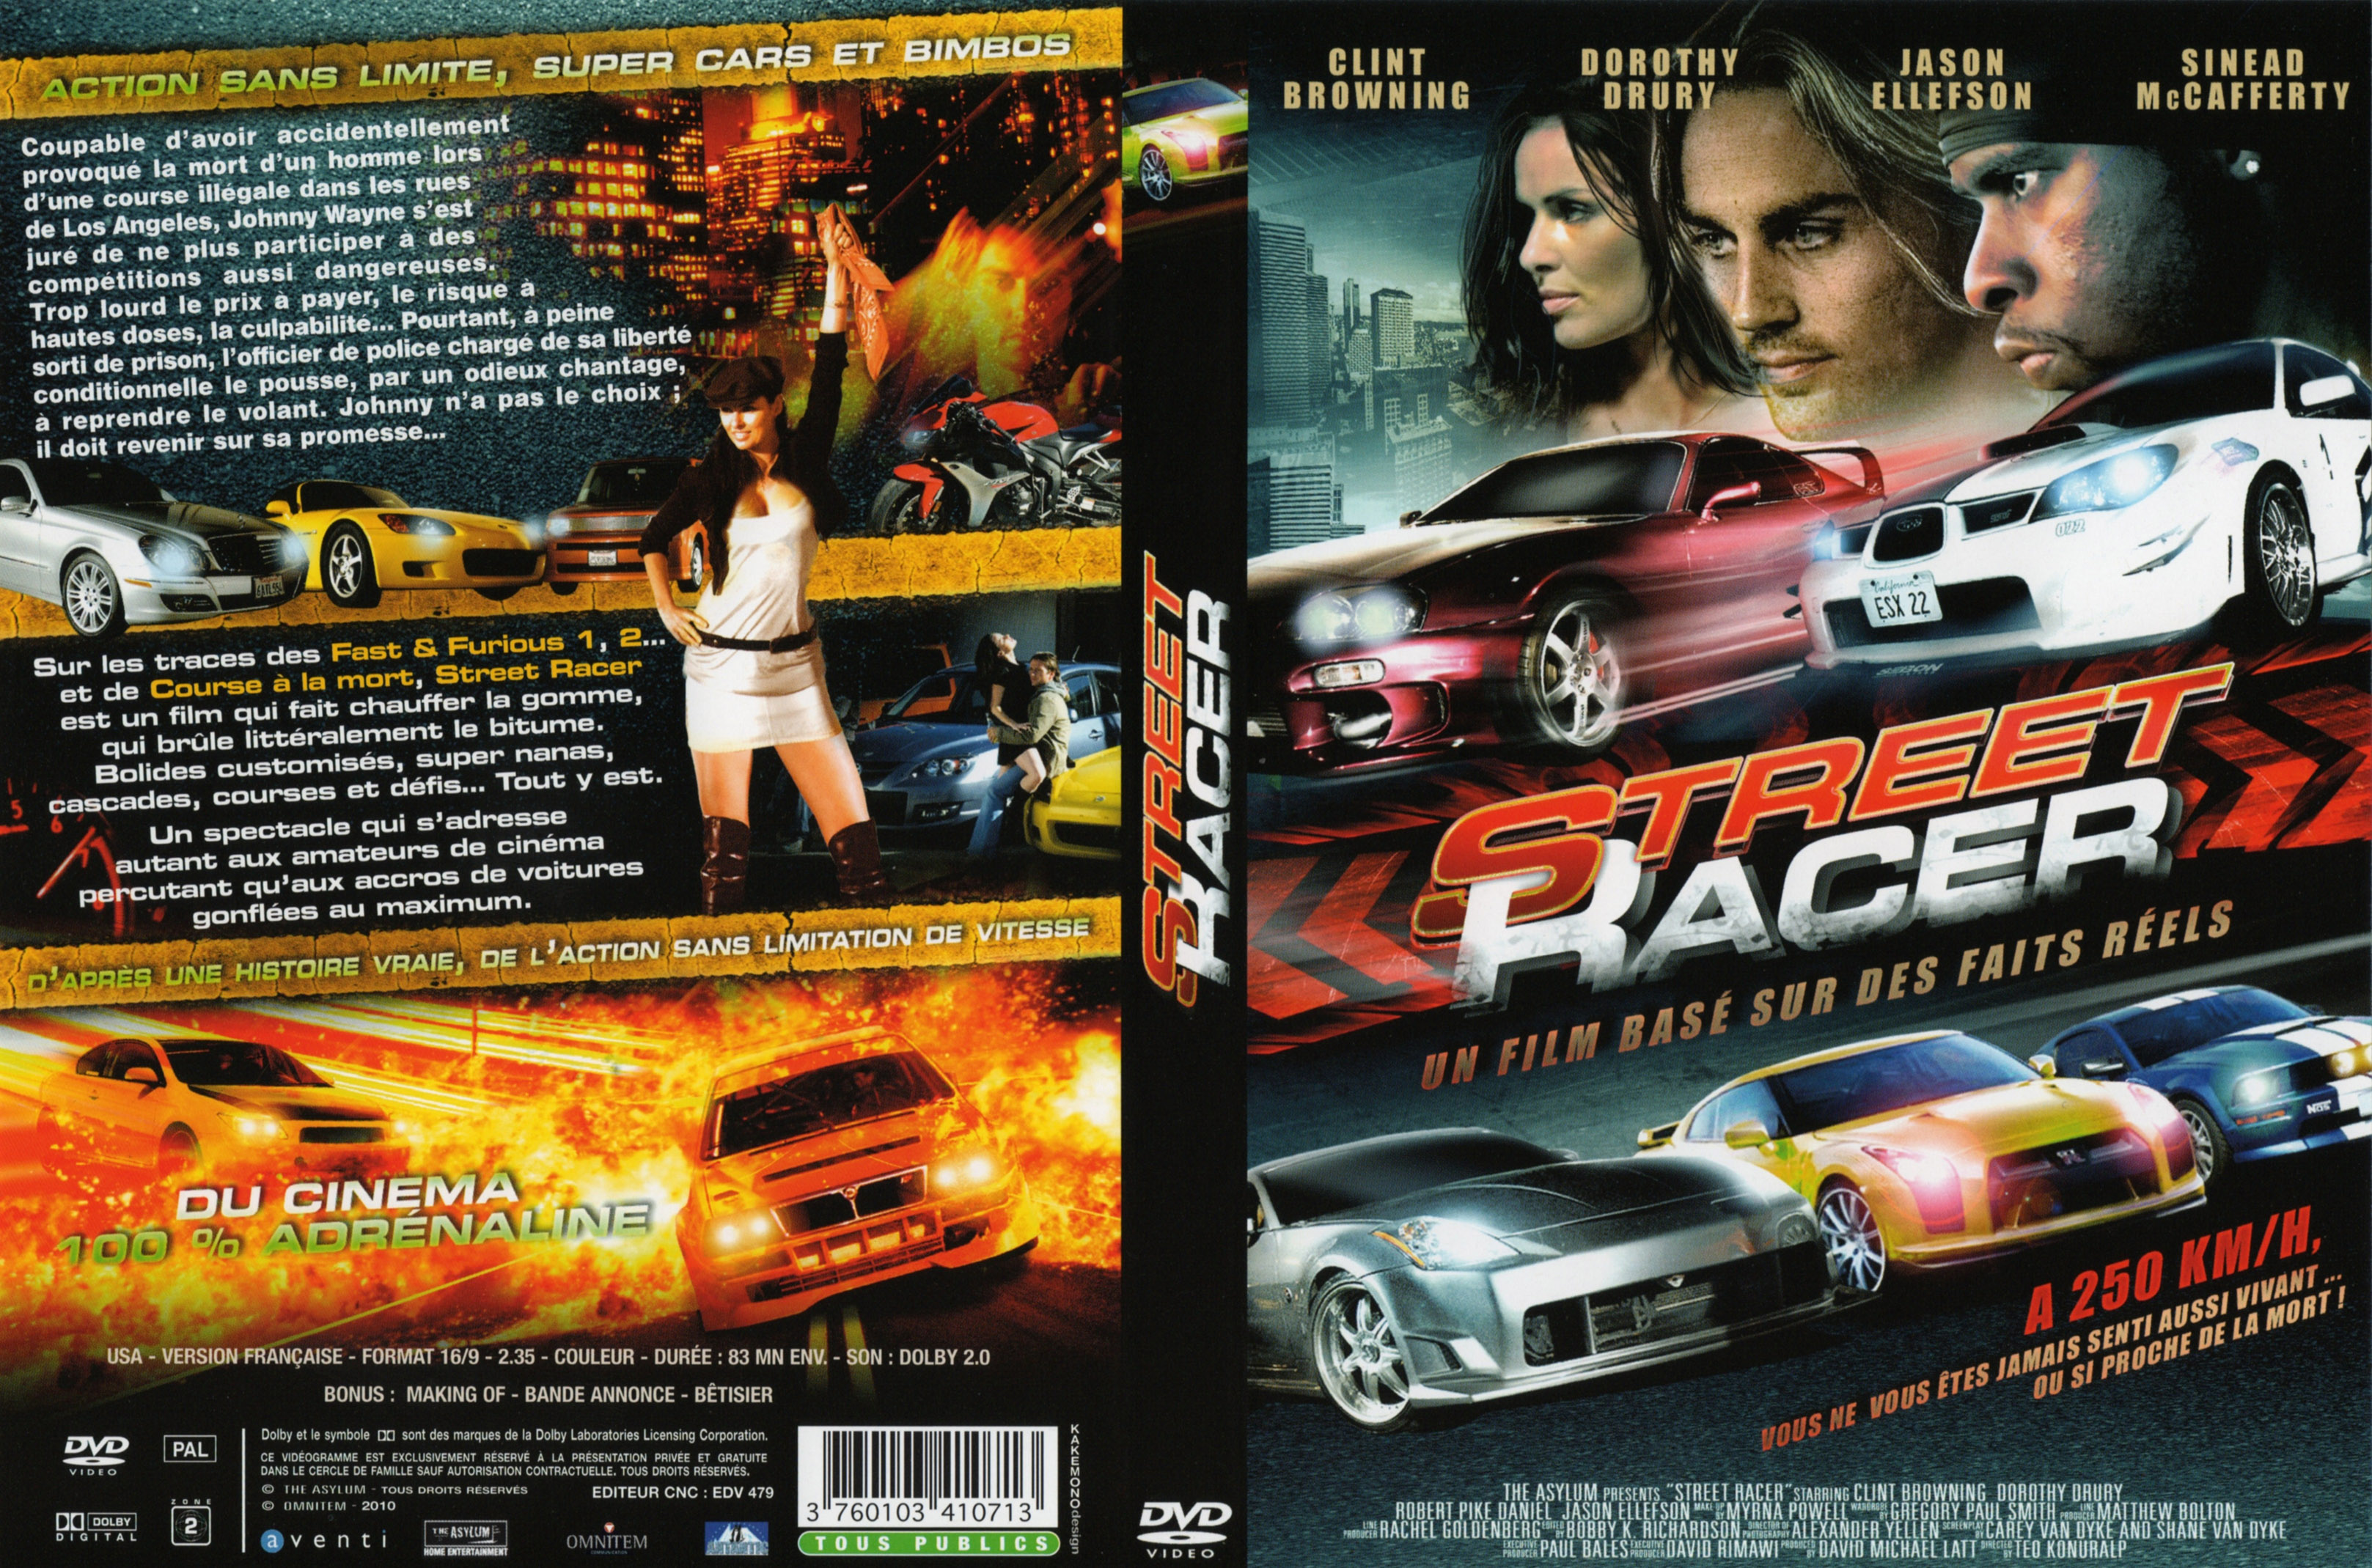 Jaquette DVD Street Racer